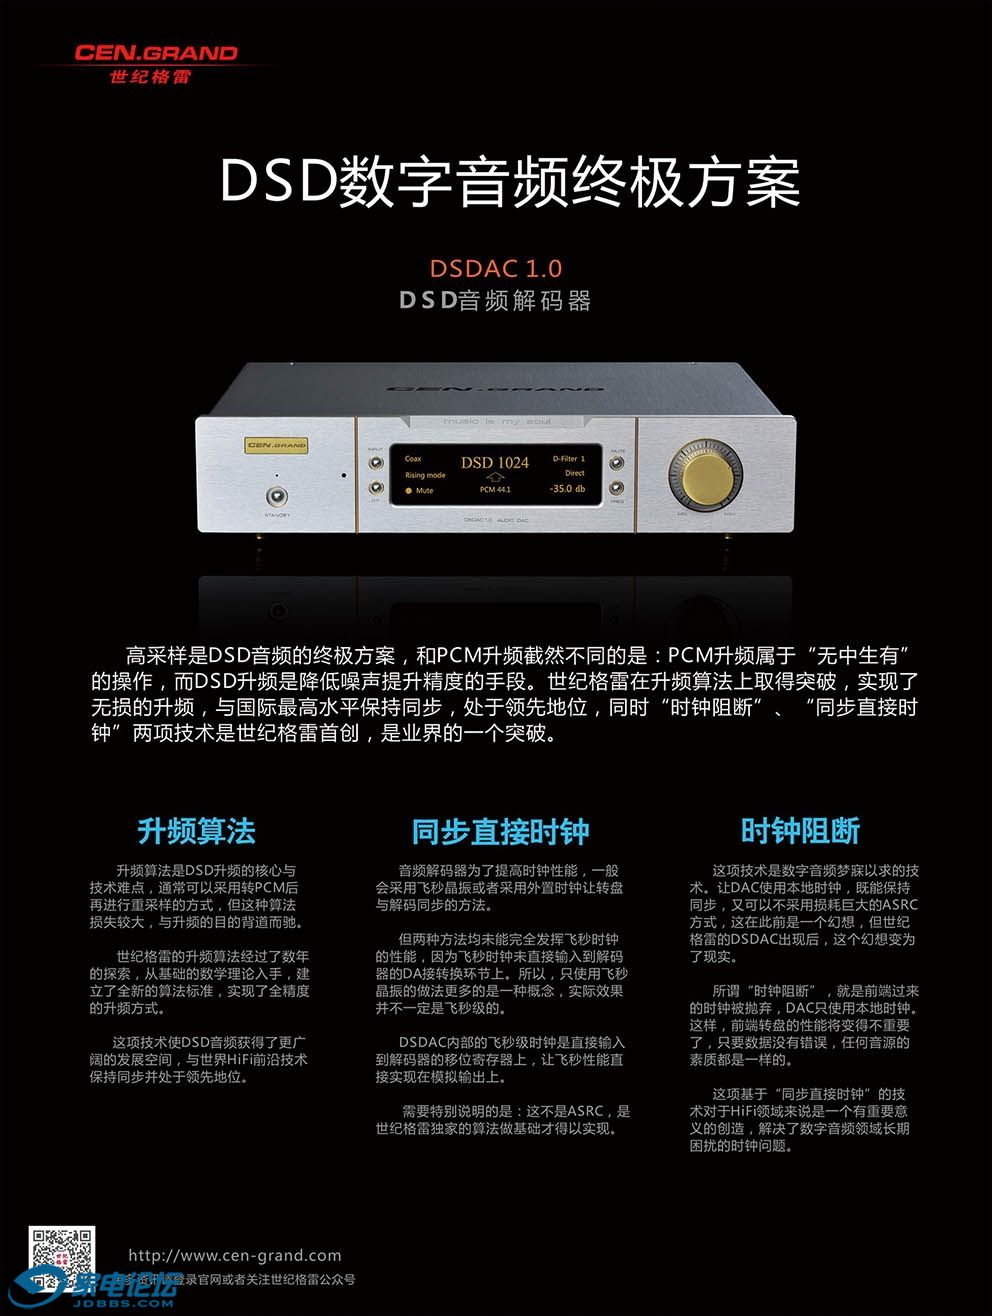 DSDAC 1.0 35 .jpg